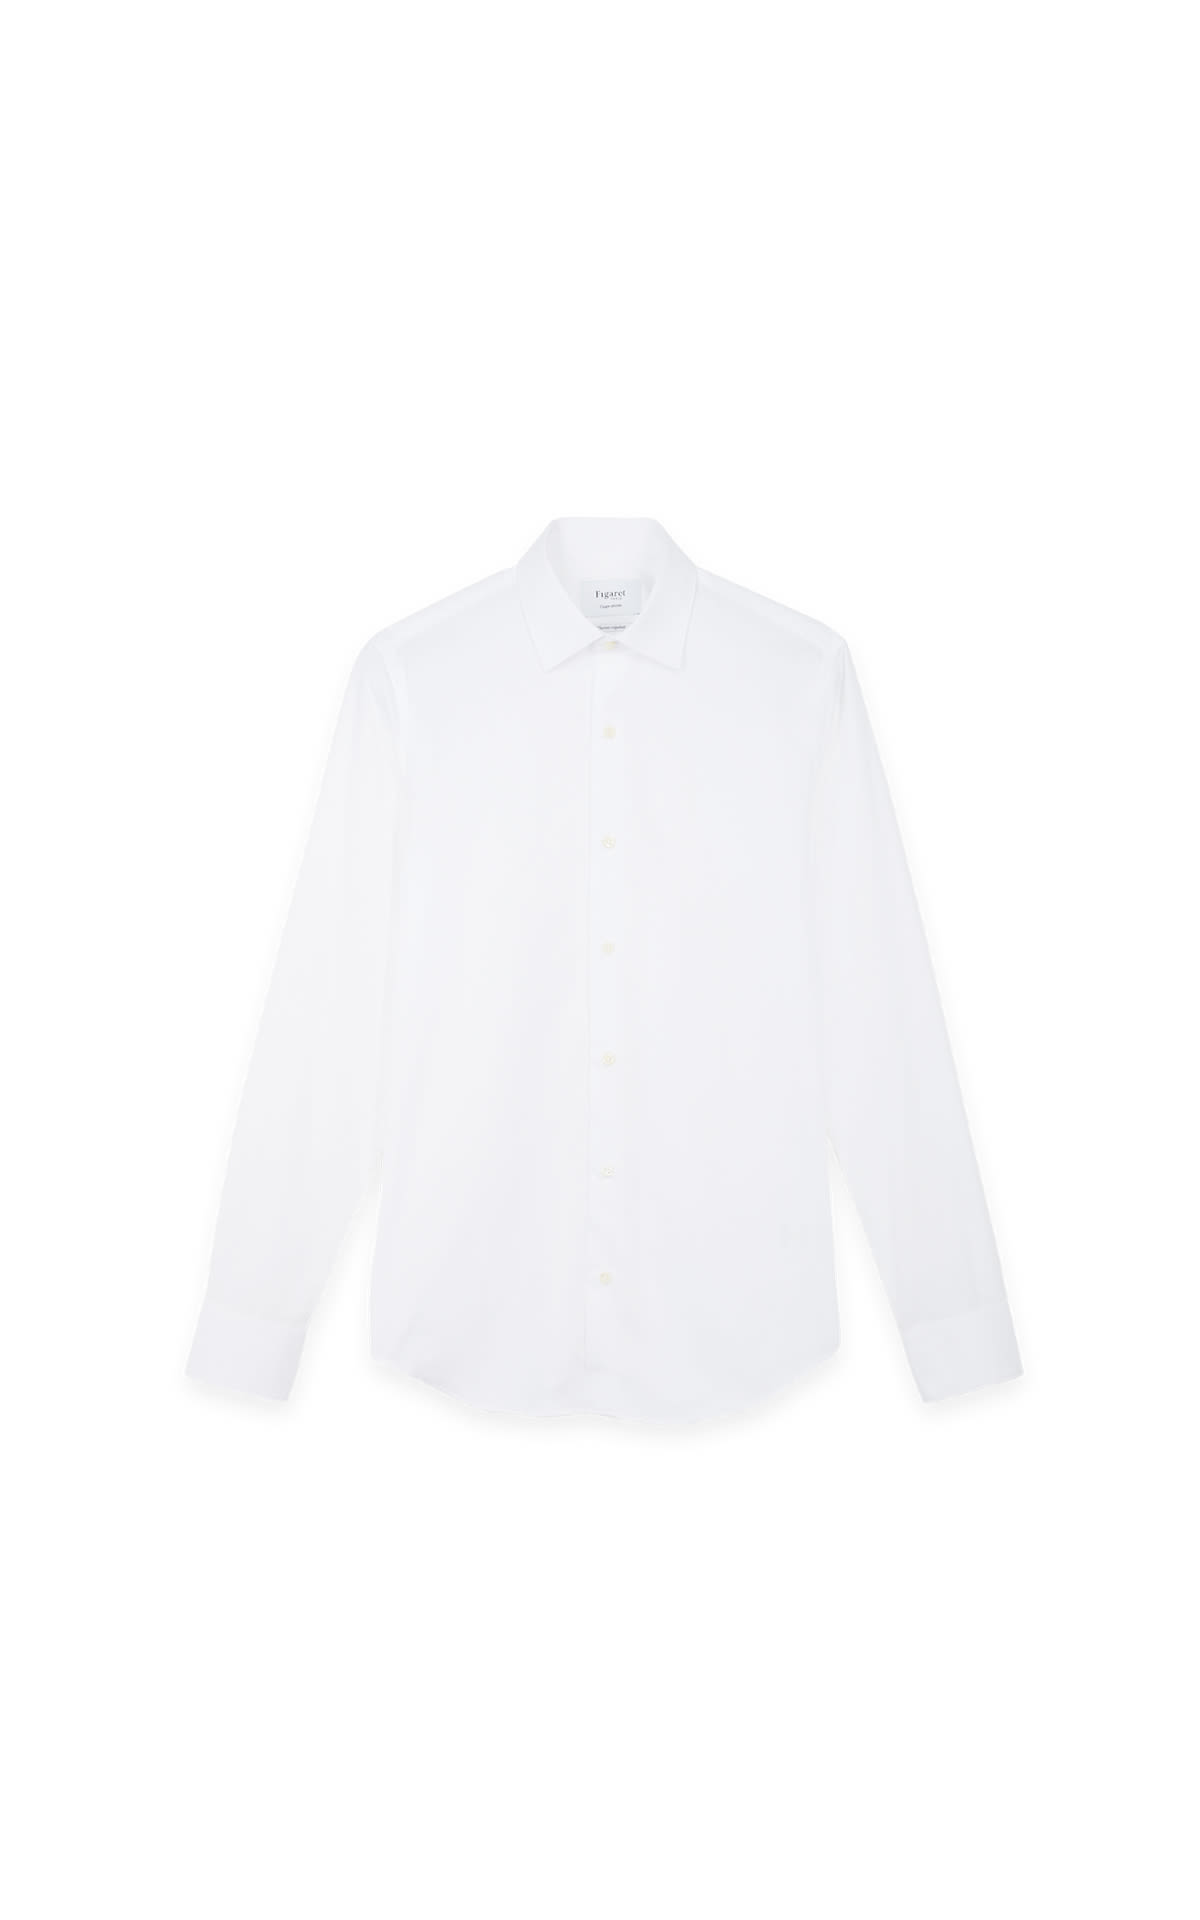 White thermoregulating shirt*